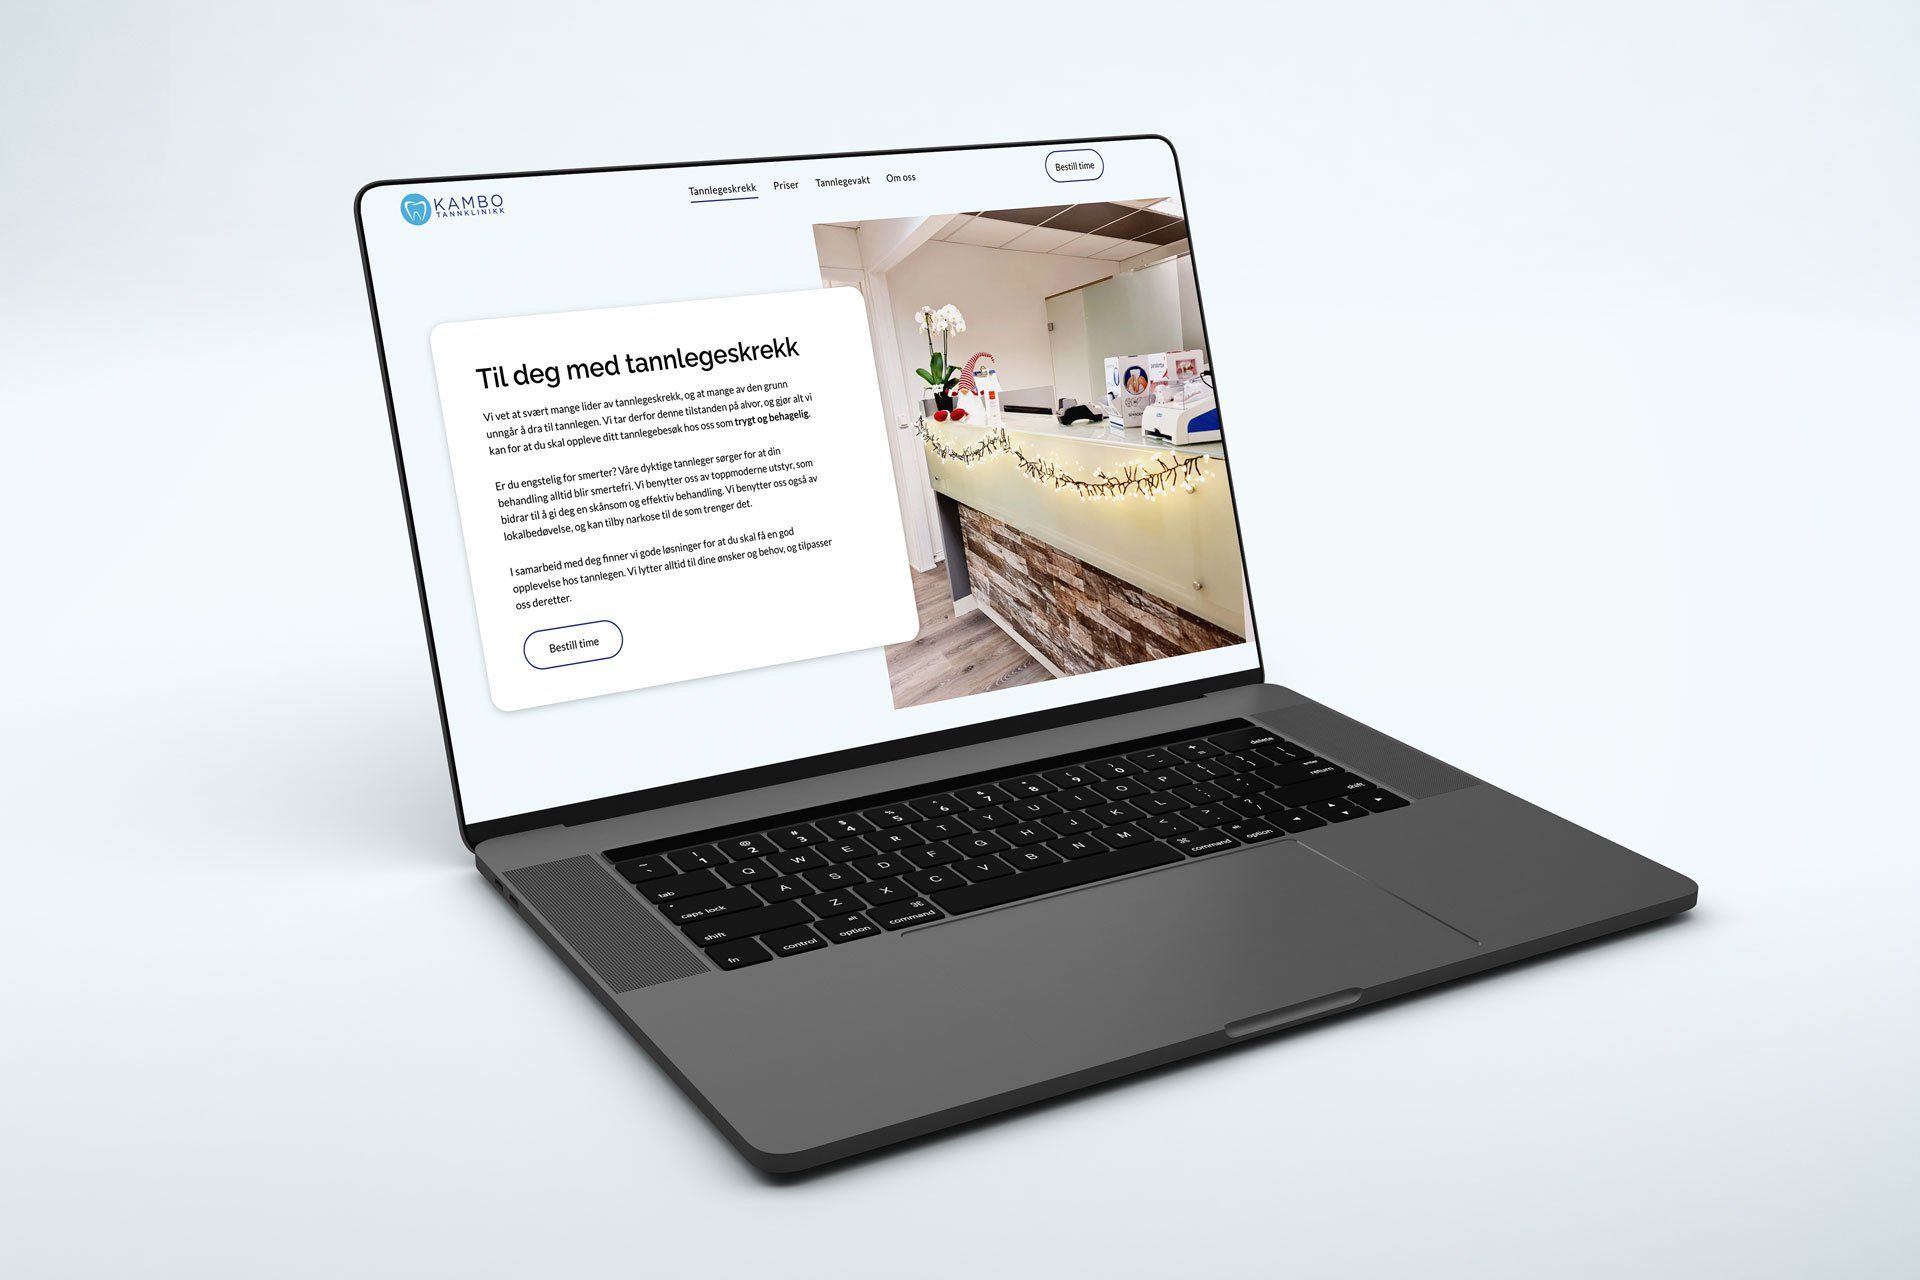 illustrasjon av nettsiden til kambo tannklinikk på en macbook pro, med lys bakgrunn